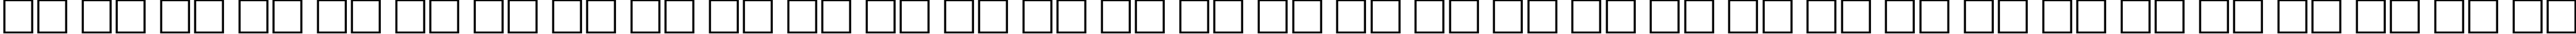 Пример написания русского алфавита шрифтом HelvDL Bold70b